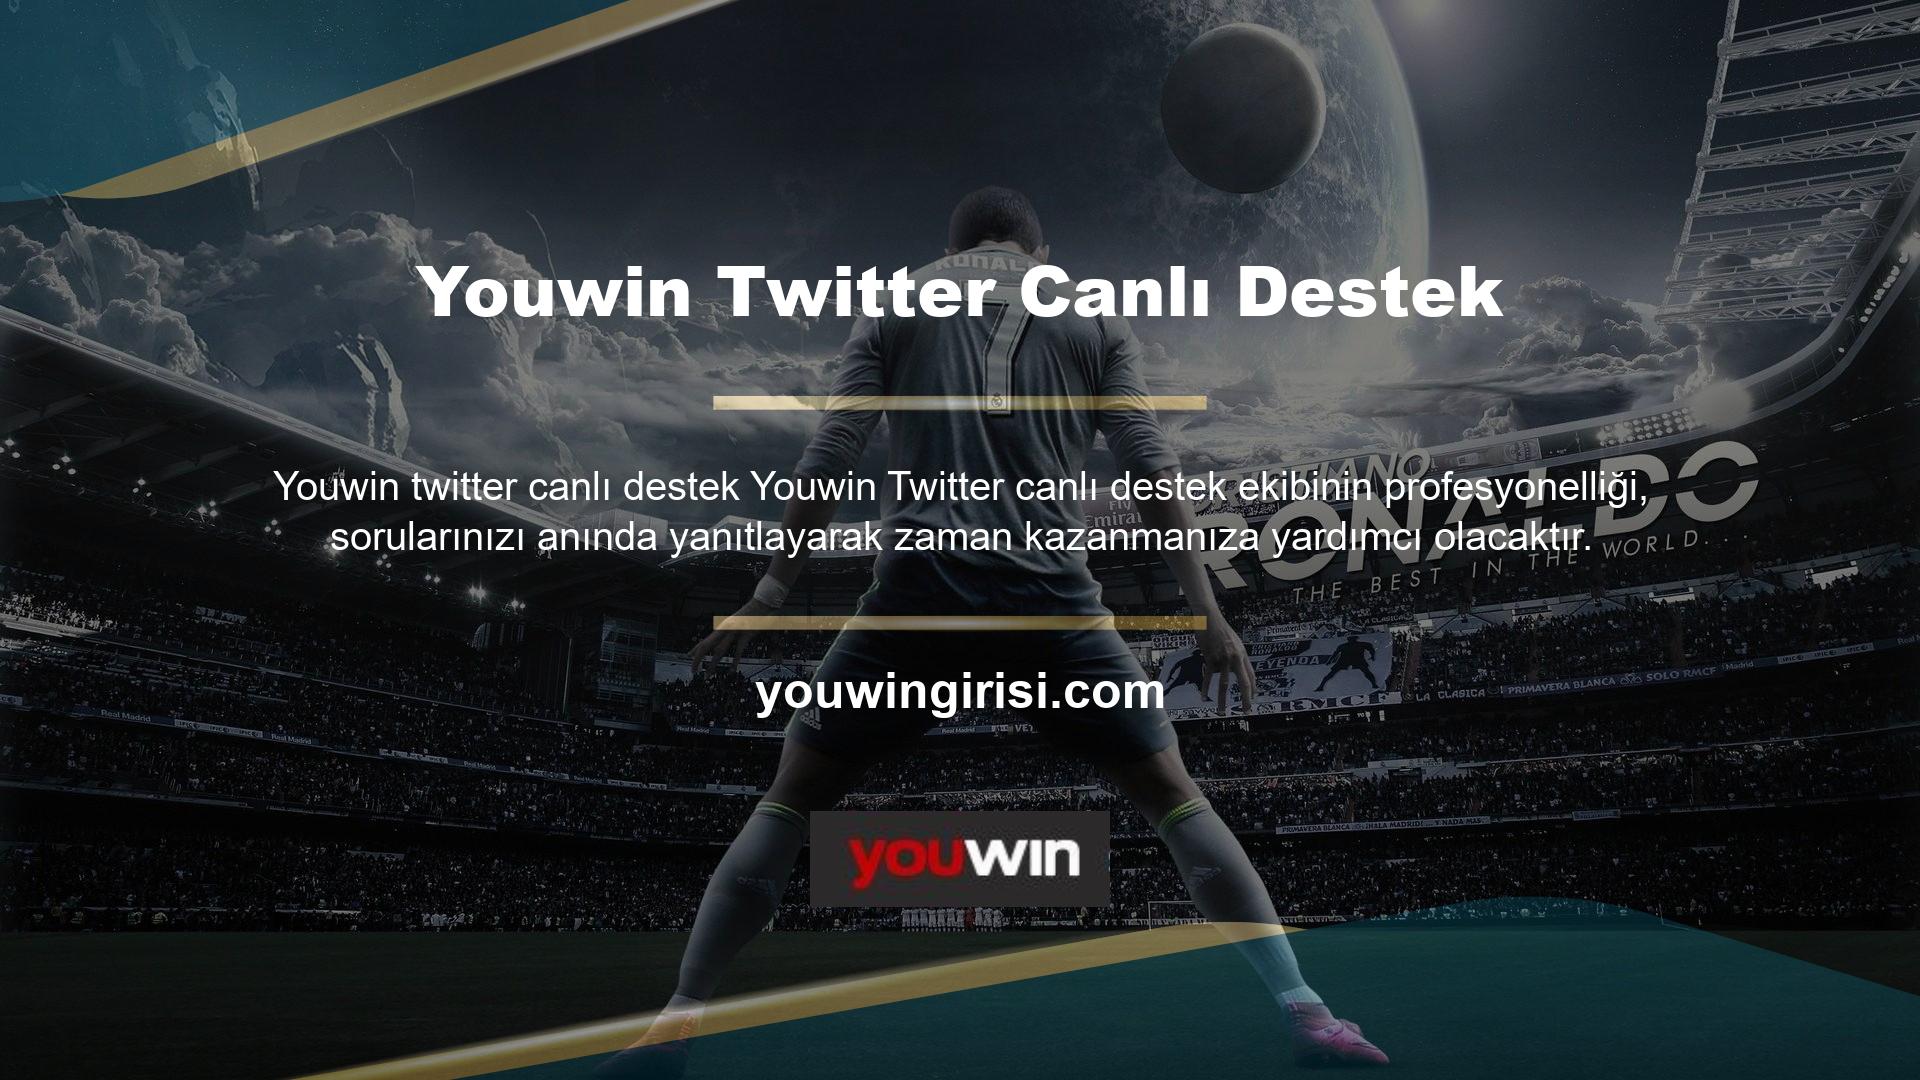 Türkiye'nin en iyi bahis sitelerinden biri olarak kabul edilen Youwin sitesine vakit kaybetmeden siteye para yatırabilir ve güvenilir bahis oynamanın keyfini çıkarabilirsiniz